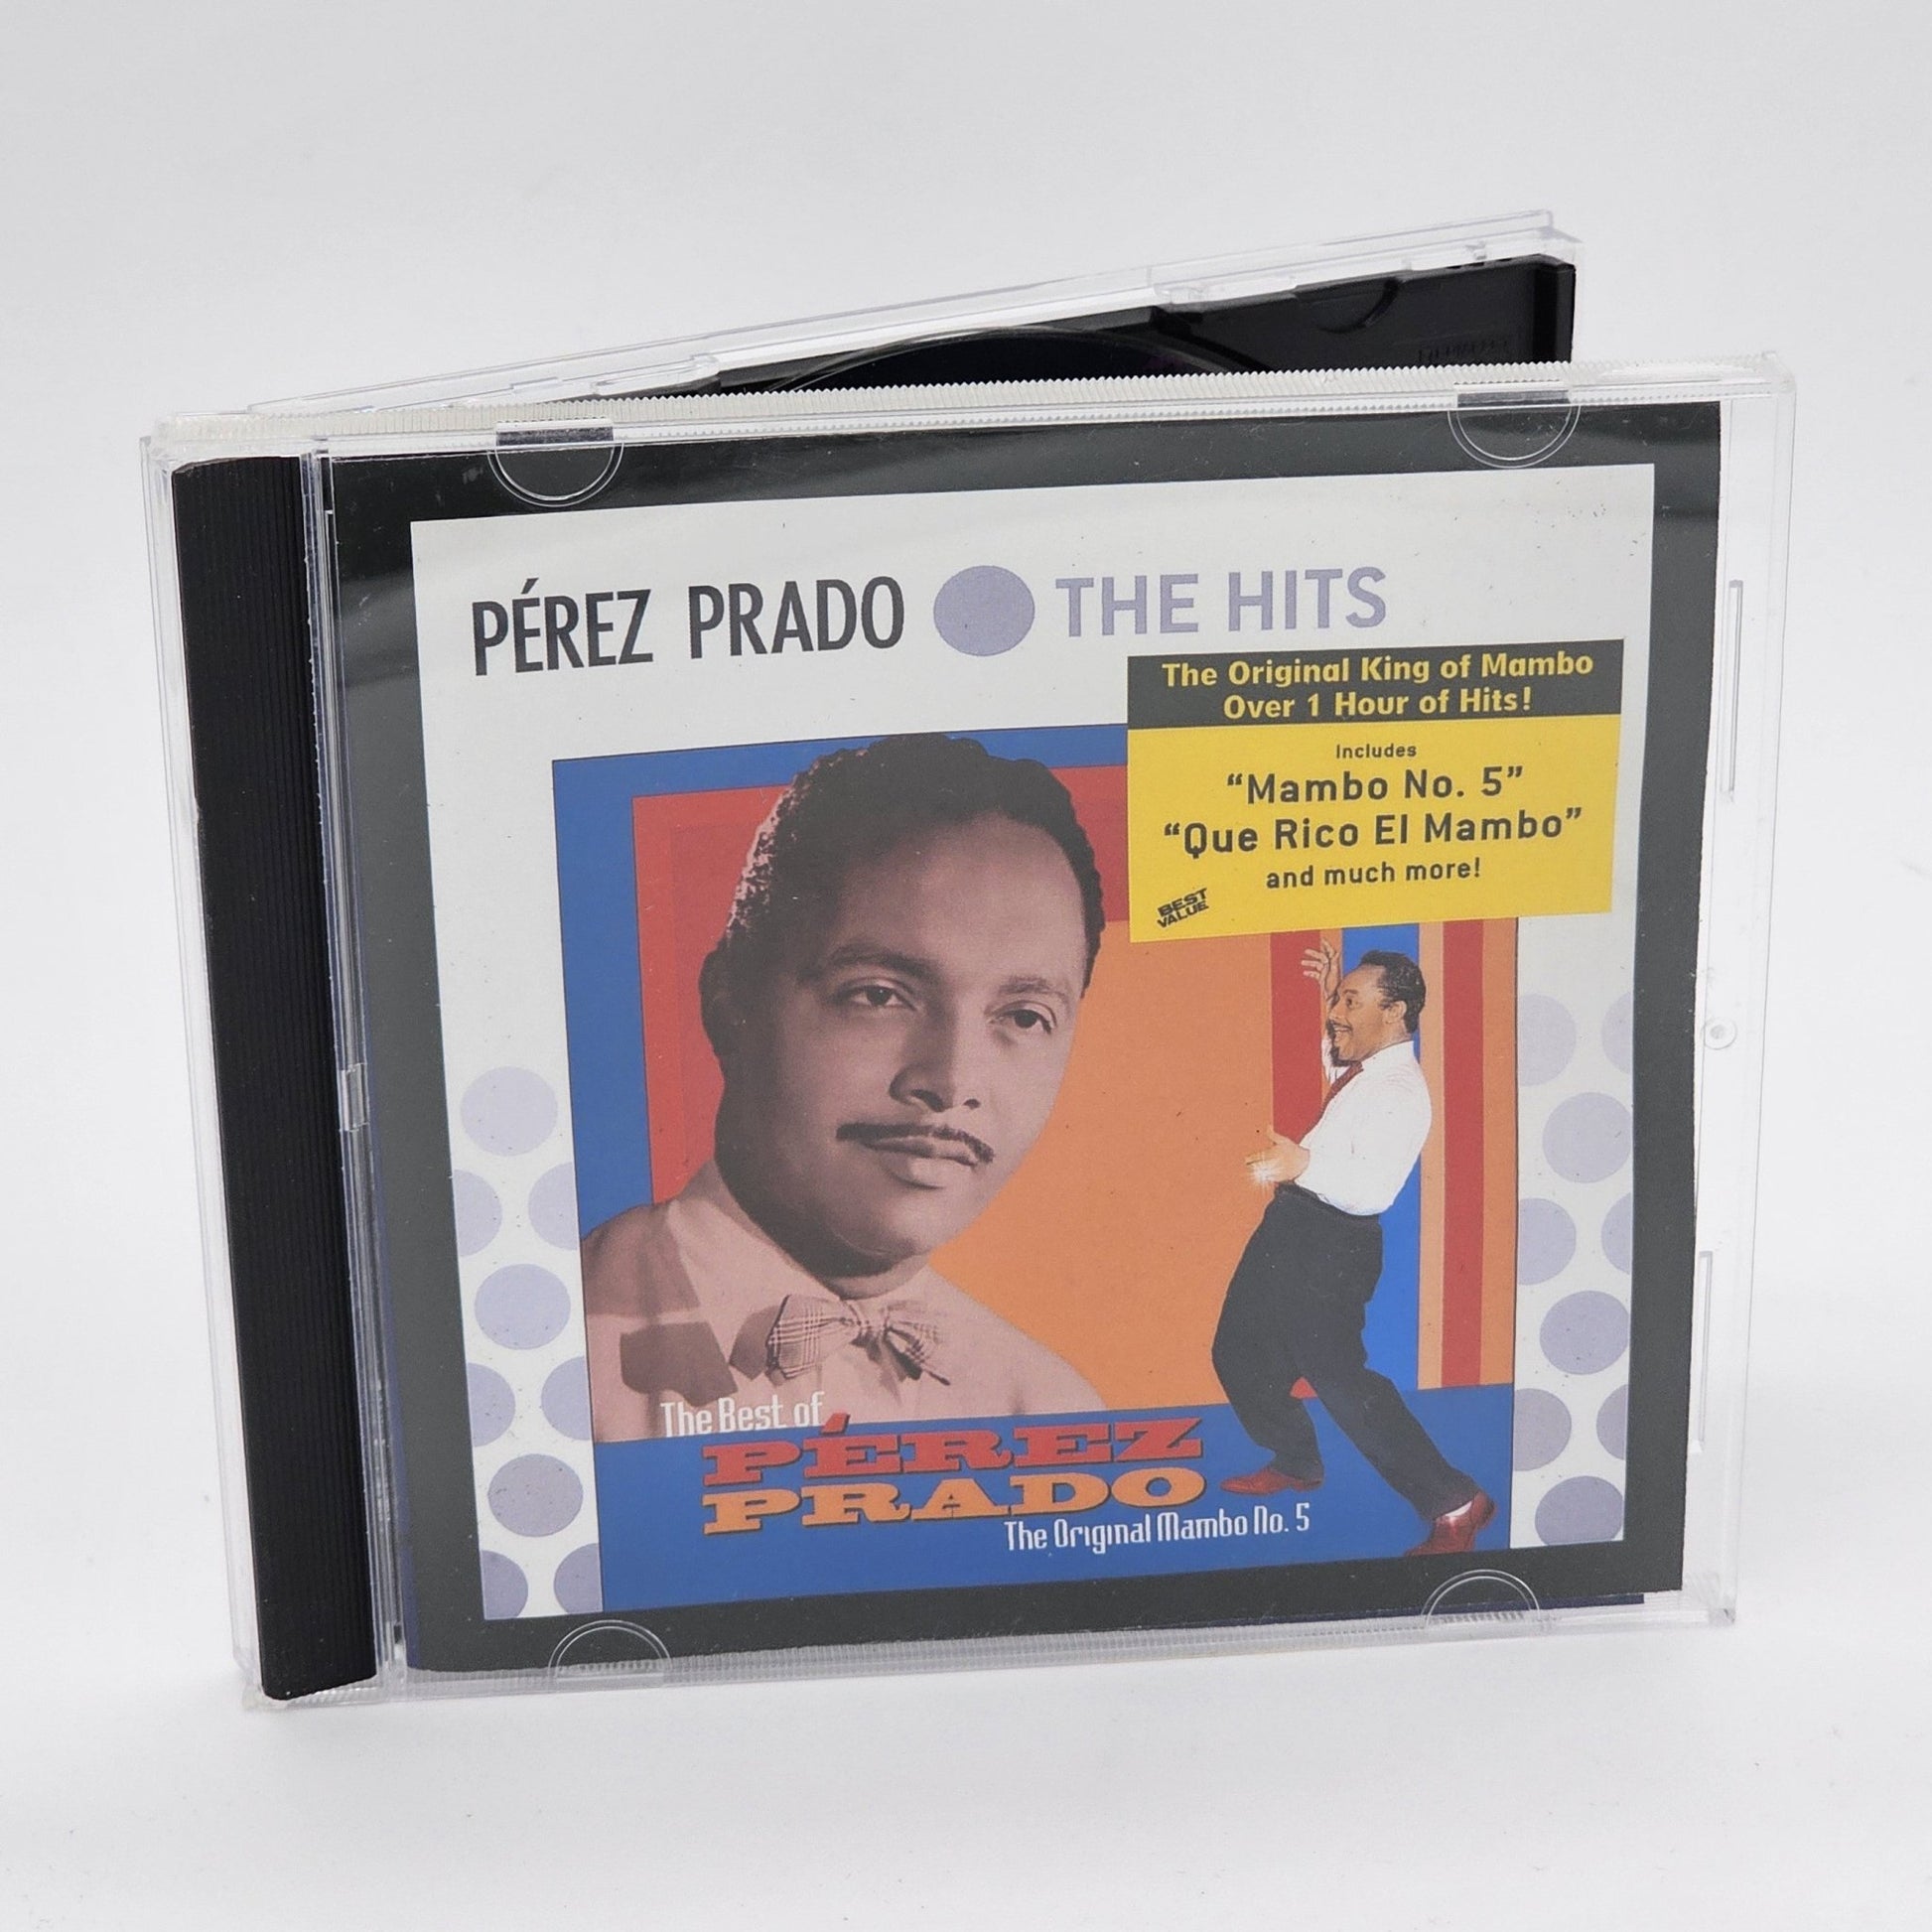 Sony Music - Pérez Prado | The Best Of Pérez Prado - The Original Mambo No. 5 | CD - Compact Disc - Steady Bunny Shop